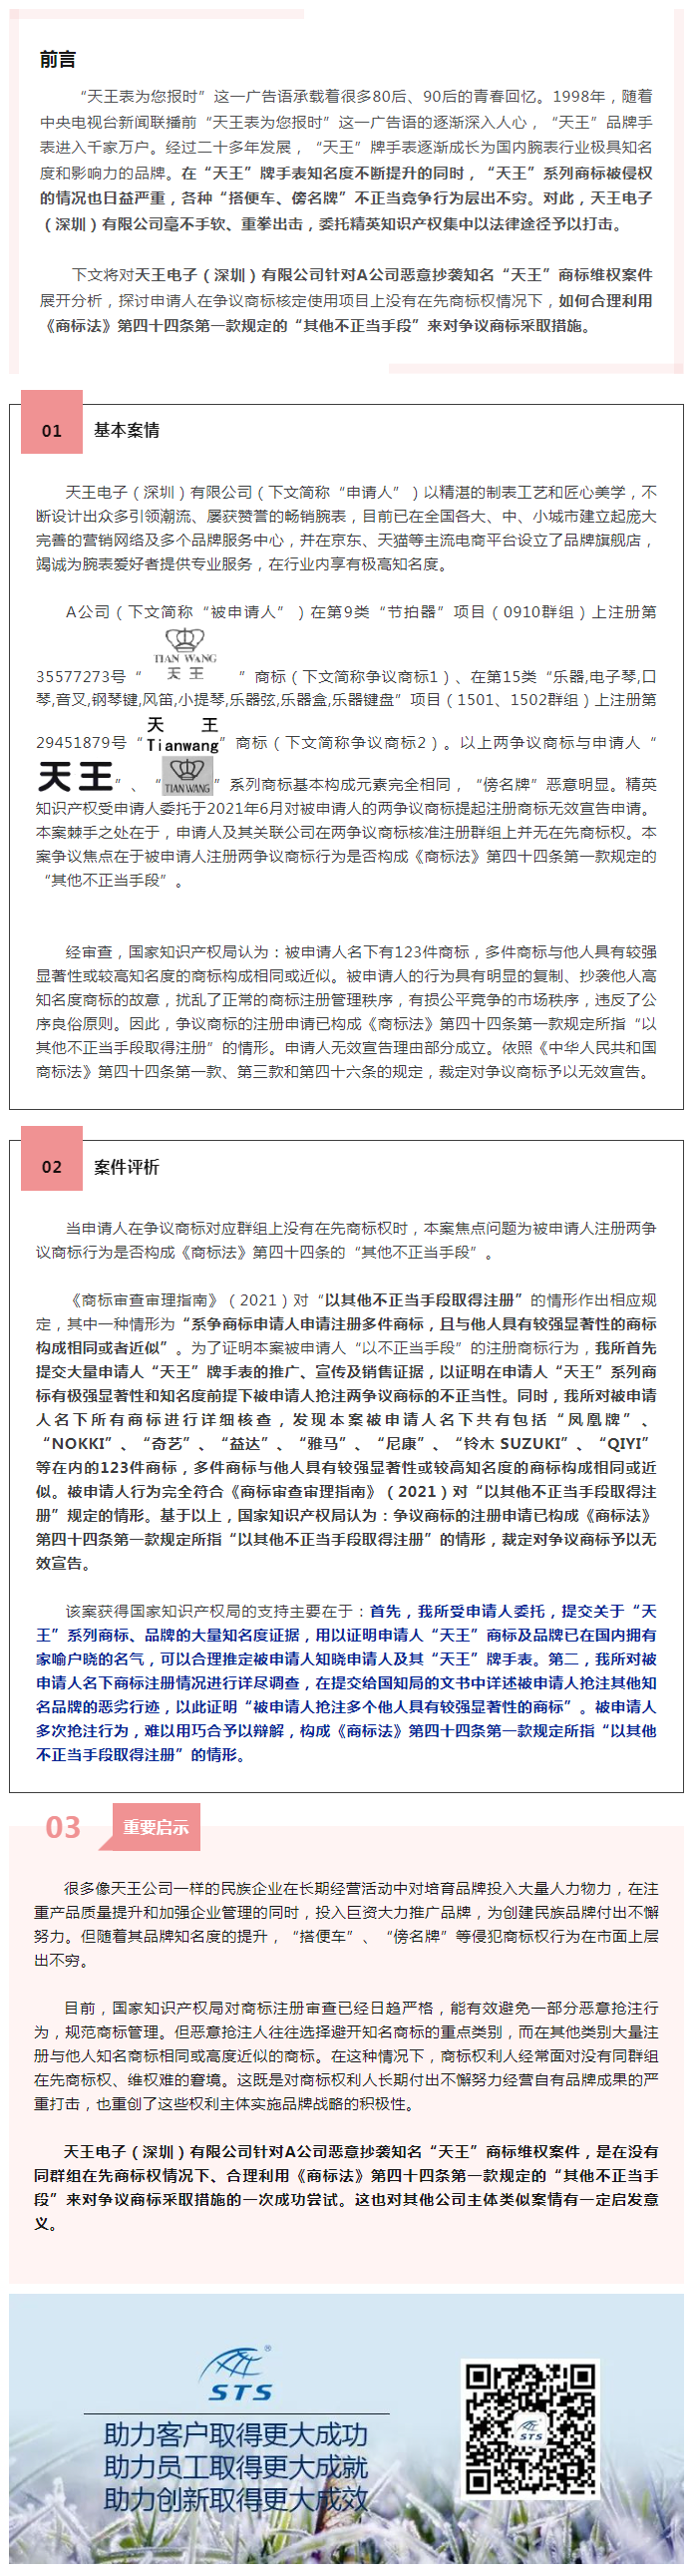 精英案例丨精英知识产权助力天王公司赢得“天王TIANWANG”商标无效宣告申请案件-2022-05-25.png